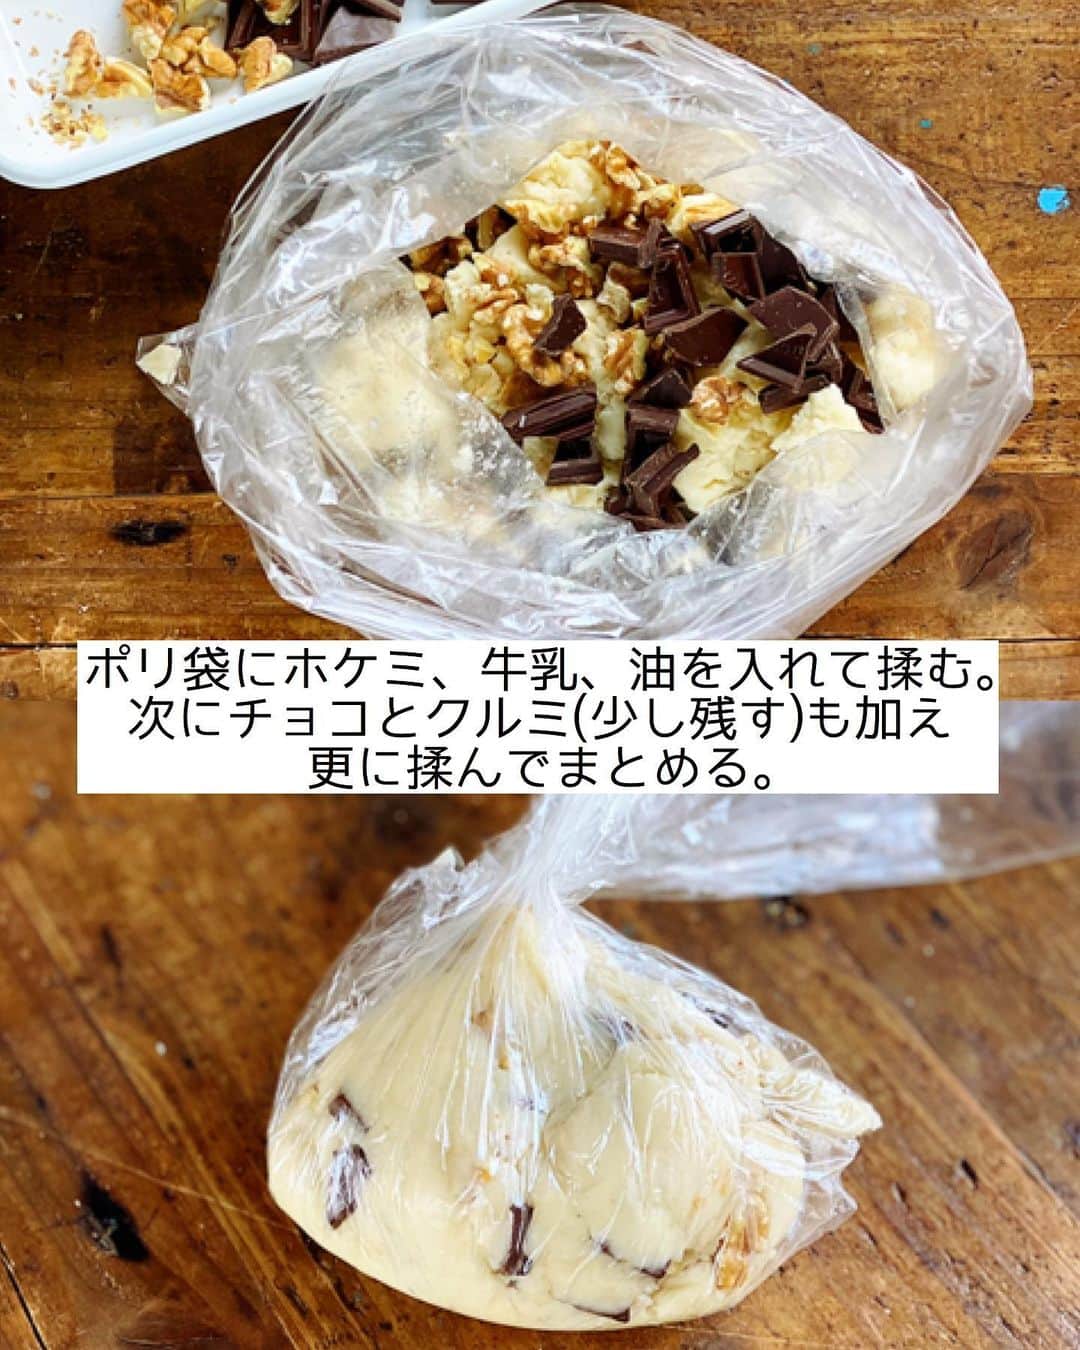 Mizuki【料理ブロガー・簡単レシピ】さんのインスタグラム写真 - (Mizuki【料理ブロガー・簡単レシピ】Instagram)「・﻿ 【#レシピ 】ーーーーーーー﻿ ホットケーキミックスで！﻿ チョコナッツスコーン﻿ ーーーーーーーーーーーーー﻿ ﻿ 　﻿ ﻿ おはようございます(*^^*)﻿ ﻿ 今日はホケミスイーツ☆﻿ バレンタインにもおすすめの﻿ \ チョコナッツスコーン / ﻿ をご紹介させていただきます♩﻿ ﻿ 作り方は超簡単(*´艸`)﻿ バターなし！﻿ 生地はポリ袋で混ぜるだけ！﻿ ﻿ チョコとクルミがザクザク入って﻿ 味も見た目も大満足の仕上がりです♡﻿ 普段のおやつにもおすすめなので﻿ よかったらお試し下さいね(*^^*)﻿ ﻿ ﻿ ﻿ ＿＿＿＿＿＿＿＿＿＿＿＿＿＿＿＿＿＿＿＿﻿ 【6個分】﻿ ホットケーキミックス...150g﻿ 牛乳・サラダ油...各大2﻿ 板チョコ...1枚(50g)﻿ クルミ...30g﻿ ﻿ (準備)チョコとクルミは適当に割る。オーブンを180度に予熱する。﻿ 1.ポリ袋にホットケーキミックス、牛乳、サラダ油を入れ、袋の外から揉む。粉っぽさがなくなったらチョコとクルミ(飾り用に少し残す)も加え、更に揉んでまとめる。﻿ 2.生地を取り出し、手で10cm大の丸形に伸ばして6等分に切る。﻿ 3.クッキングシートを敷いた天板に並べ、残りのチョコとクルミをのせ、予熱したオーブンで15分焼く。﻿ ￣￣￣￣￣￣￣￣￣￣￣￣￣￣￣￣￣￣￣￣﻿ ﻿ ﻿ ﻿ 《ポイント》﻿ ︎ ♦︎ホットケーキミックスの種類により生地がまとまらない場合は、牛乳とサラダ油を少し足して下さい♩﻿ ♦︎私は森永のホットケーキミックスを使用しています♩﻿ ♦︎チョコの種類はお好みで♩﻿ ﻿ ﻿ ﻿ ﻿ ﻿ ﻿ ﻿ ﻿ 🎁#今どき和食 器プレゼントキャンペーン🎁﻿ おかげざで［今どき和食］が10刷増版となりました✨﻿ そこで心ばかりですが感謝の気持ちをお伝えしたく﻿ 《器プレゼントキャンペーンを実施中です♩》﻿ ↓﻿ _________________________________﻿ 【プレゼント内容】﻿ ￣￣￣￣￣￣￣￣￣﻿ 今人気の波佐見焼 大皿1枚﻿ もしくは小皿2枚セットを15名様に﻿ ﻿ 【応募方法】﻿ ￣￣￣￣￣￣￣￣￣﻿ ❶［Mizukiの今どき和食］から﻿ 1品ご自身で作った料理画像、﻿ もしくはカバー(表紙)画像を準備。﻿ ❷［#Mizukiの今どき和食器プレゼント ］﻿ のタグを付けて投稿！﻿ (以上で応募完了です😊　2/14〆切)﻿ _________________________________﻿ ﻿ 　﻿ ﻿ ﻿ ﻿ ﻿ ⭐️発売中⭐️﻿ ＿＿＿＿＿＿＿＿＿＿＿＿＿＿＿＿＿＿﻿ ホケミレシピの決定版♩﻿ \はじめてでも失敗しない/﻿ 📙#ホットケーキミックスのお菓子 📙﻿ ﻿ NHKまる得マガジンテキスト☆﻿ ホットケーキミックスで﻿ 📗絶品おやつ&意外なランチ📗﻿ ﻿ しんどくない献立、考えました♩﻿ \15分でいただきます/﻿ 📕#Mizukiの2品献立 📕﻿ ﻿ 和食をもっとカジュアルに♩﻿ \毎日のごはんがラクになる/﻿ 📘Mizukiの今どき和食 📘﻿ ﻿ 重版しました！﻿ ありがとうございます😭﻿ 📗ラクしておいしい！#1品晩ごはん 📗﻿ ﻿ 摂食障害から料理研究家になるまでを綴った﻿ はじめてのエッセイ本﻿ 📙#普通のおいしいをつくるひと 📙﻿ ￣￣￣￣￣￣￣￣￣￣￣￣￣￣￣￣￣￣￣﻿ ﻿ ﻿ ﻿ ﻿ ﻿ ＿＿＿＿＿＿＿＿＿＿＿＿＿＿＿＿＿＿﻿ レシピを作って下さった際や﻿ レシピ本についてのご投稿には﻿ タグ付け( @mizuki_31cafe )して﻿ お知らせいただけると嬉しいです😊💕﻿ ￣￣￣￣￣￣￣￣￣￣￣￣￣￣￣￣￣￣﻿ ﻿ ﻿ ﻿ ﻿ ﻿ #ホットケーキミックス#スコーン#バレンタイン#Mizuki#簡単レシピ#時短レシピ#節約レシピ#料理#フーディーテーブル#マカロニメイト#おうちごはん#デリスタグラマー#料理好きな人と繋がりたい#おうちごはんlover#写真好きな人と繋がりたい#foodpic#cooking#recipe#lin_stagrammer#foodporn#yummy#f52grams#チョコナッツスコーンm」2月7日 7時33分 - mizuki_31cafe